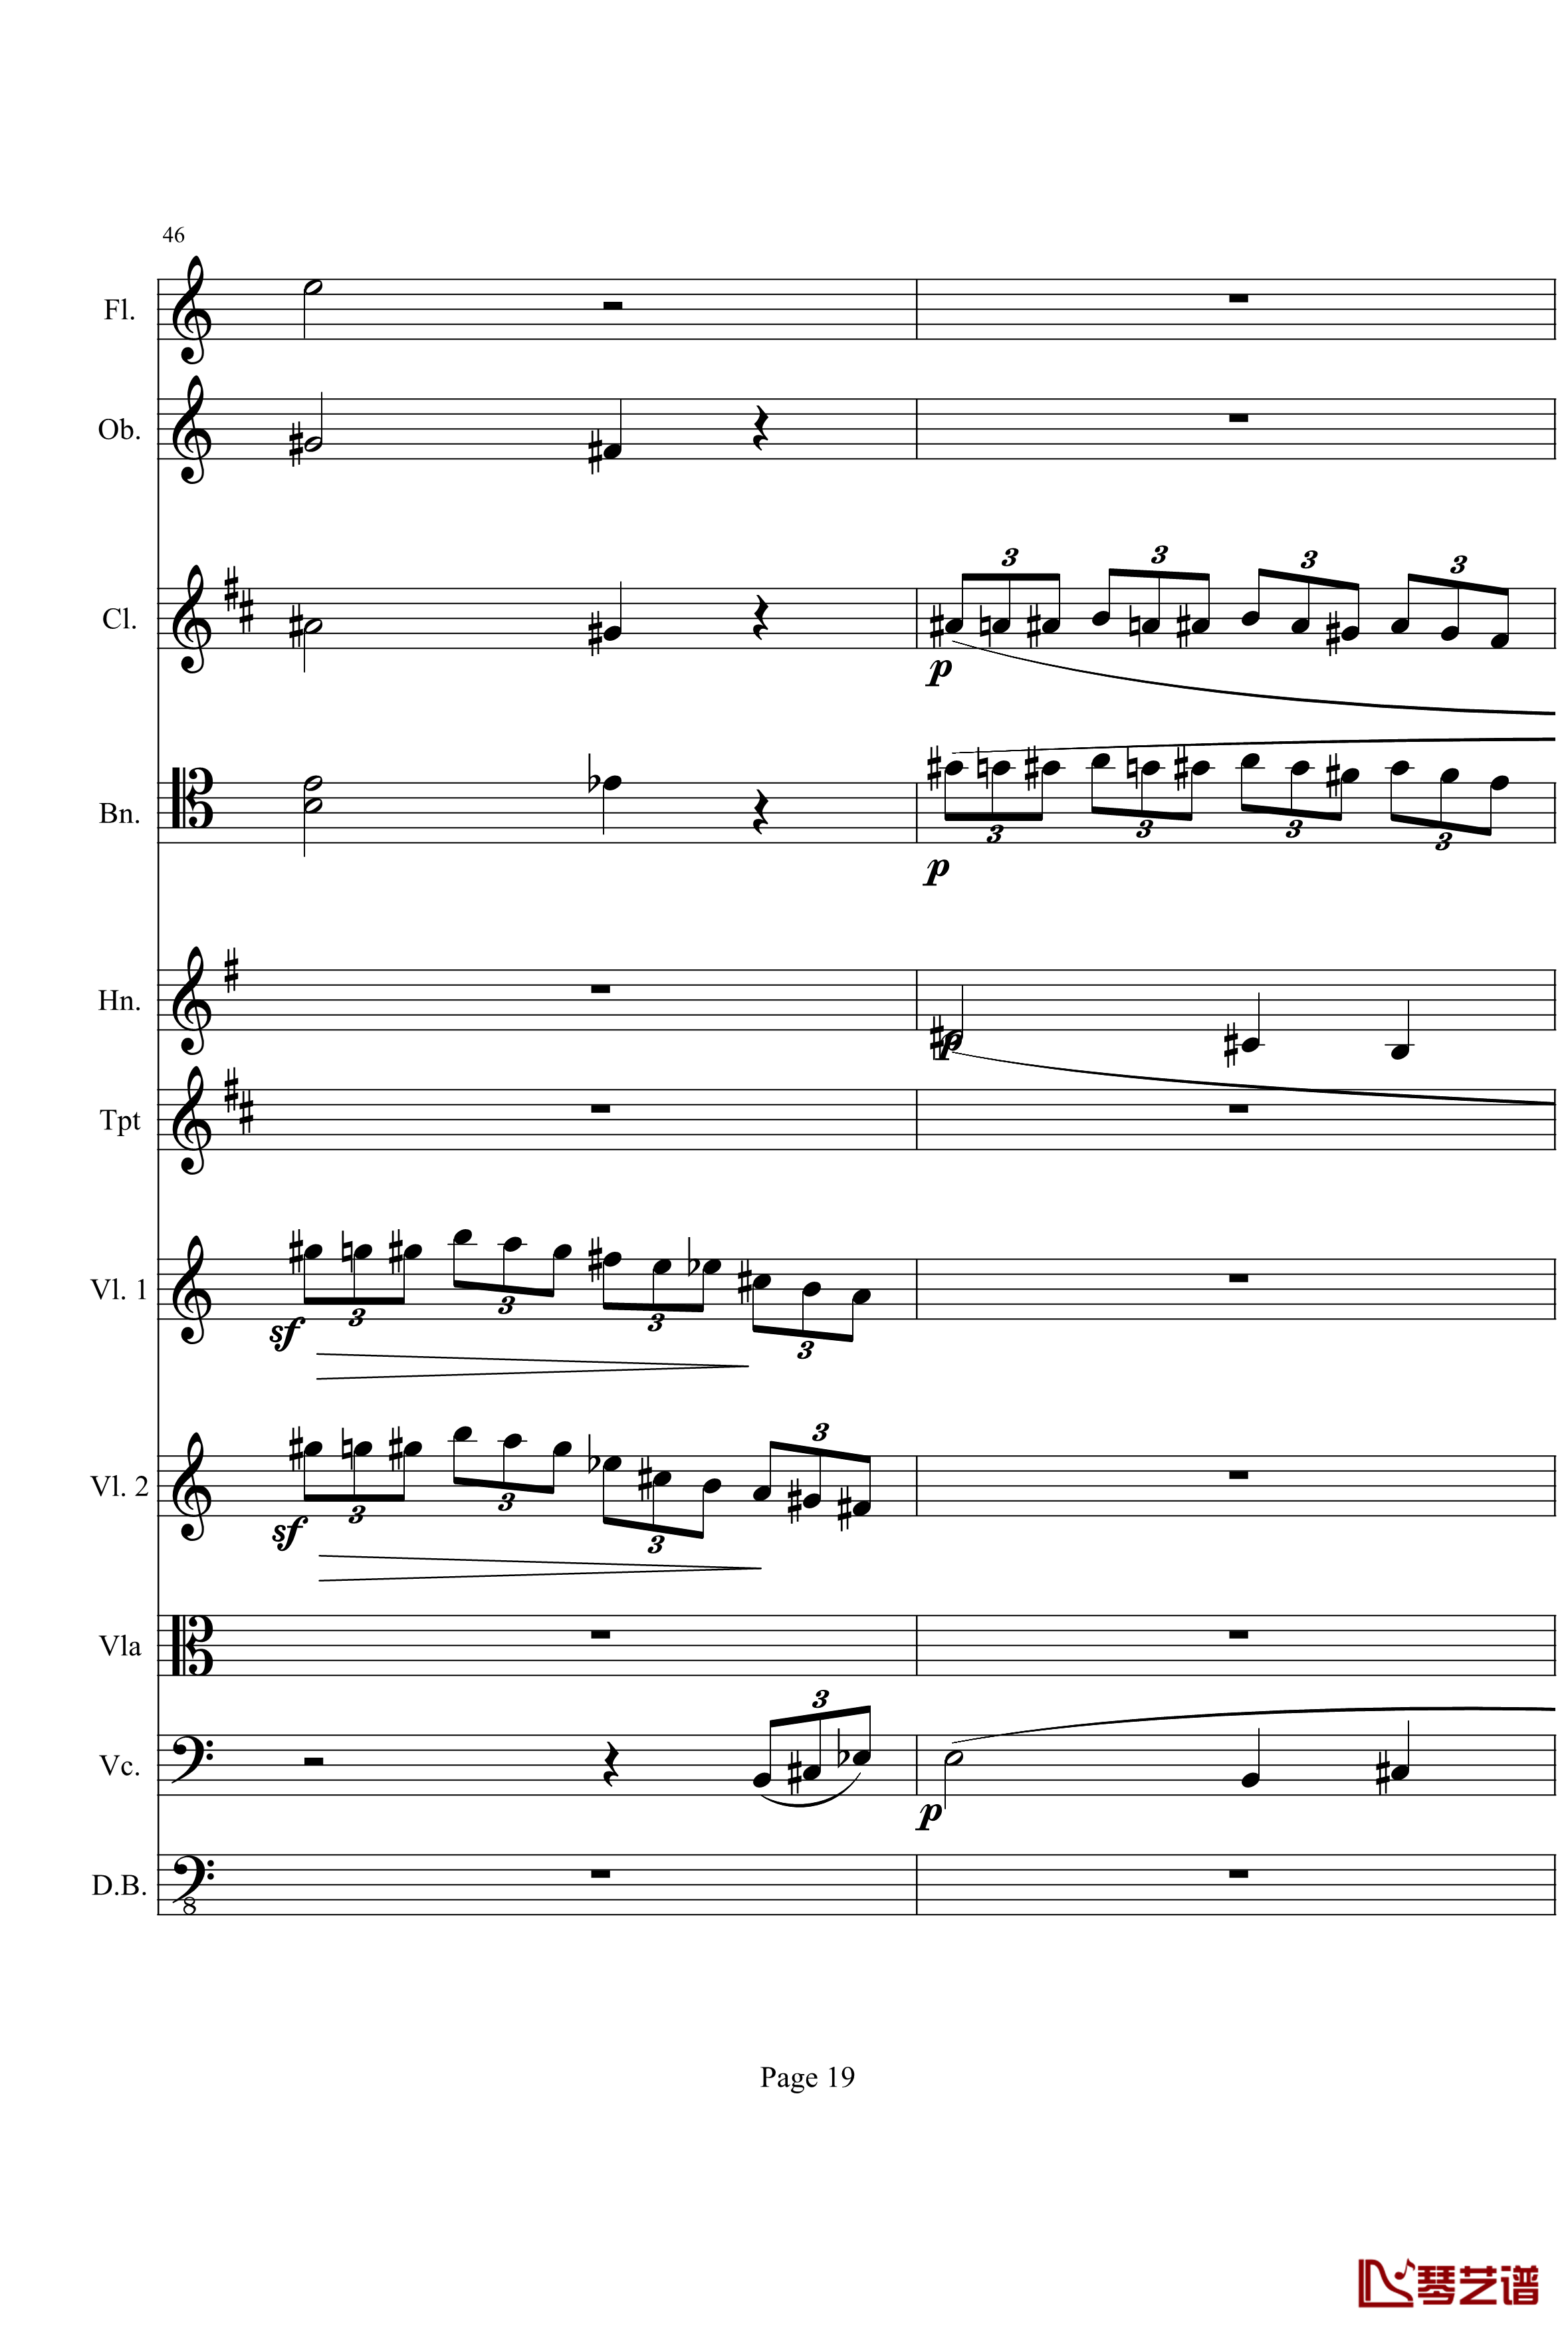 奏鸣曲之交响钢琴谱-第21-Ⅰ-贝多芬-beethoven19